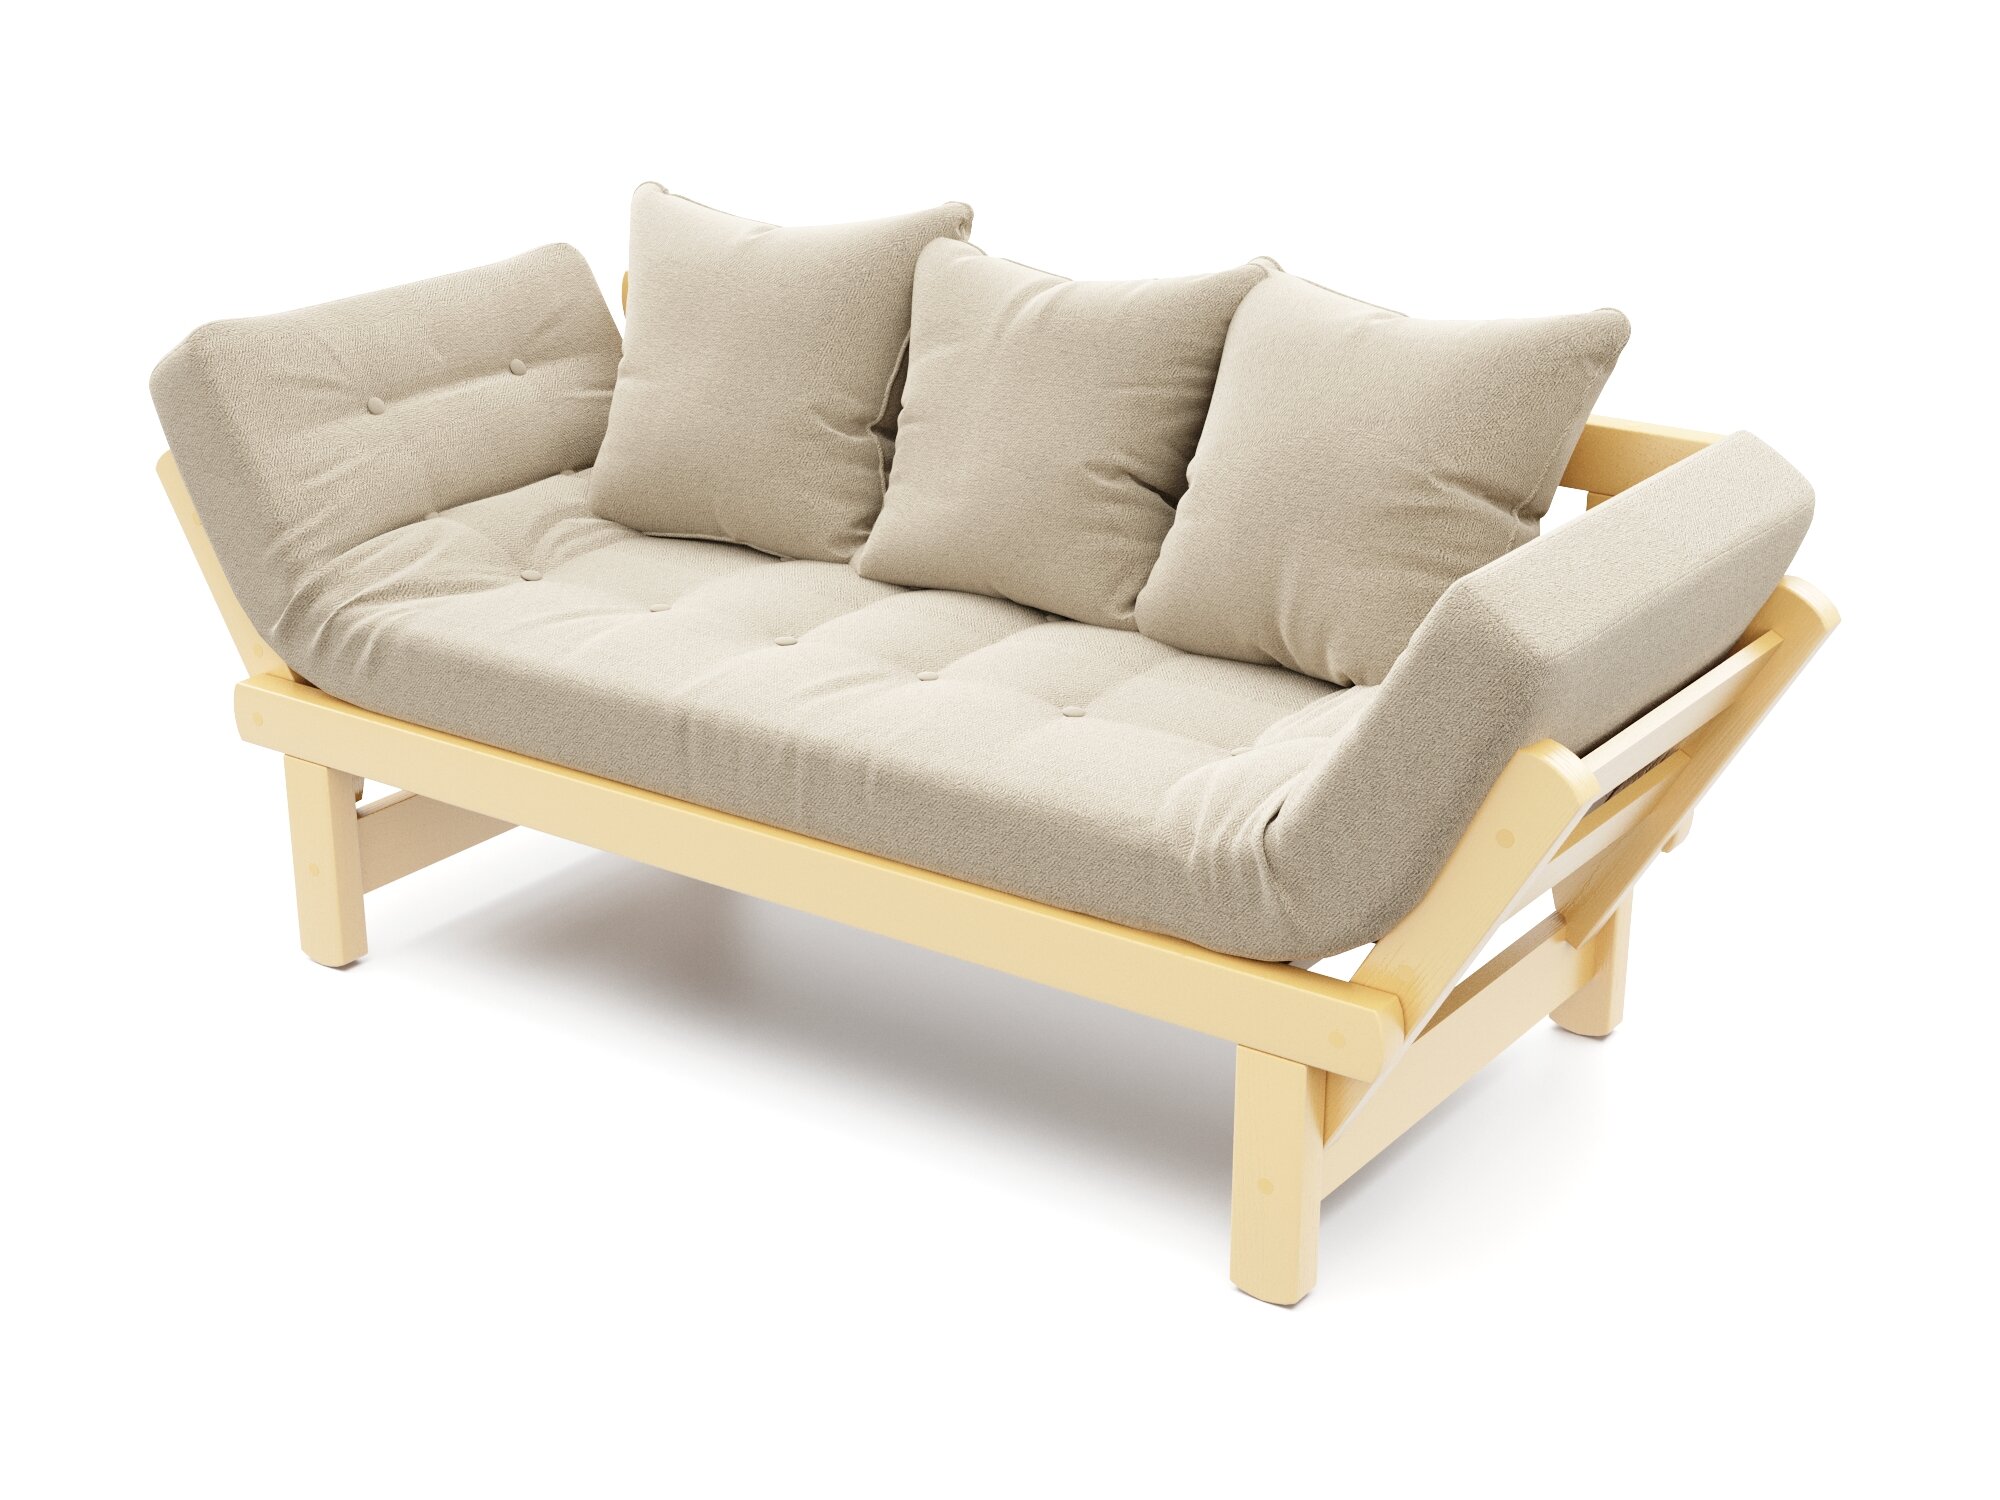 Деревянный диван кушетка Soft Element Эльф, раскладные подлокотники, рогожка, бежевый-желтый, скандинавский лофт, дачная, в баню